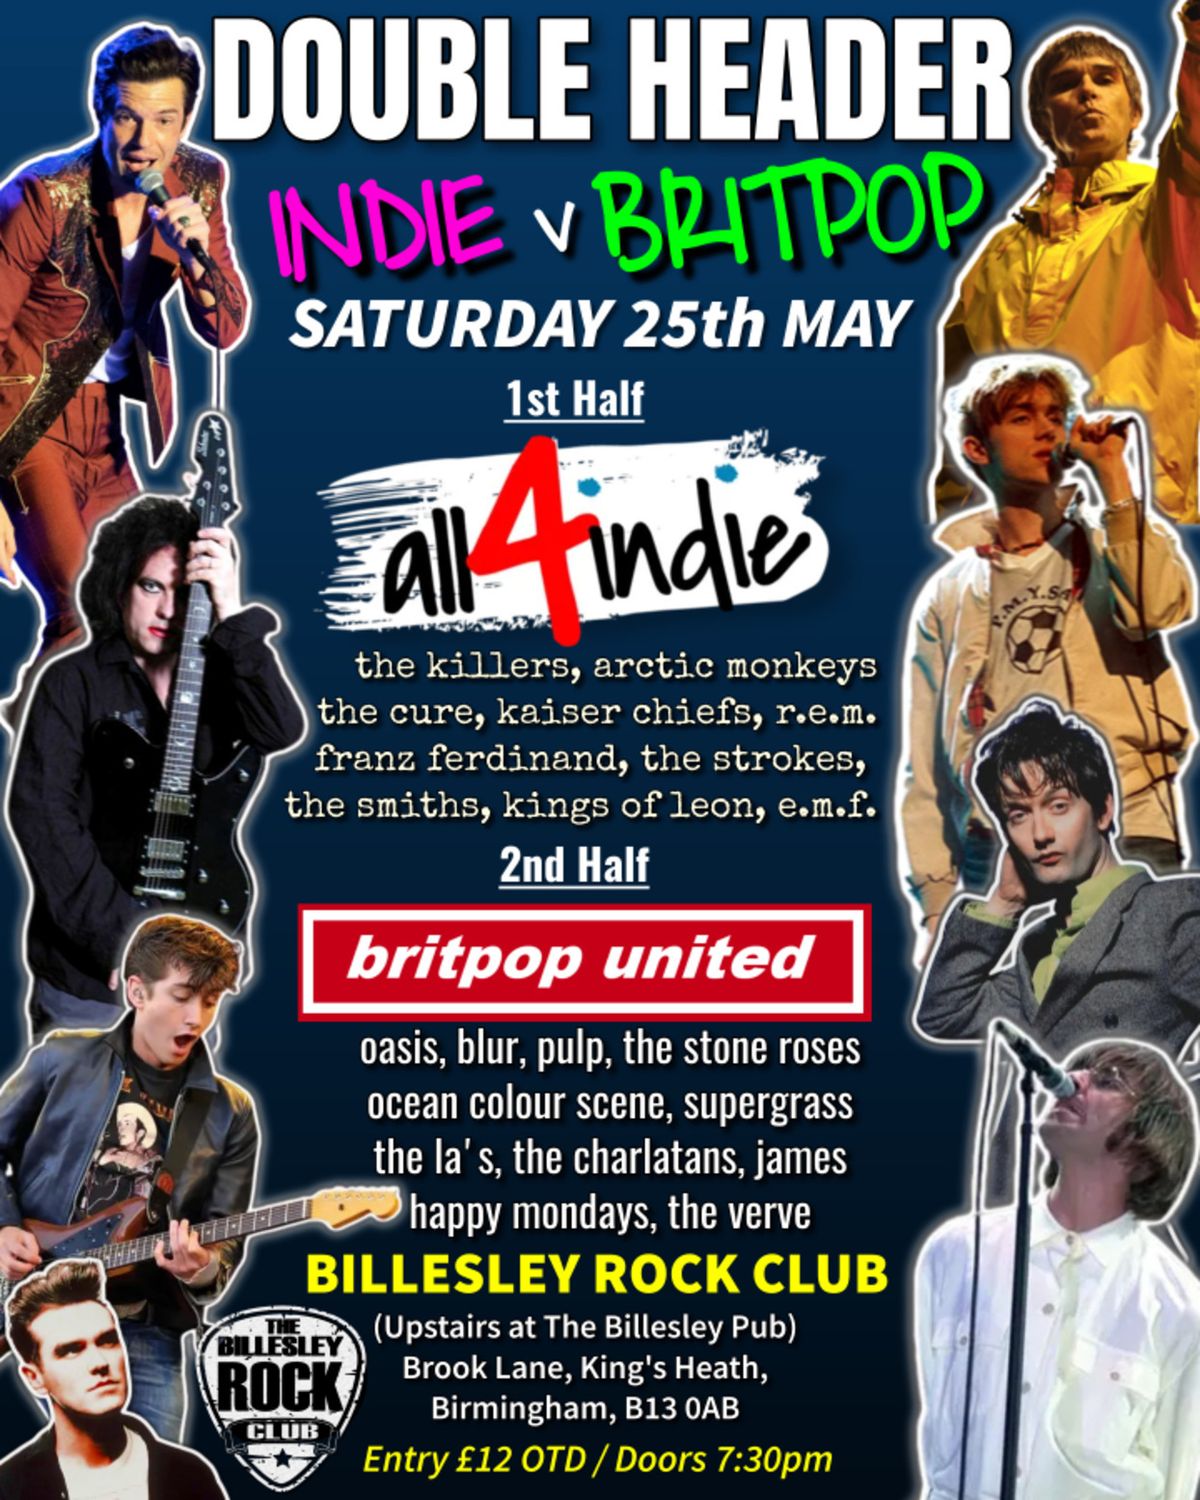 Double Header INDIE v BRITPOP All4Indie AND Britpop United @ Billesley Rock Club